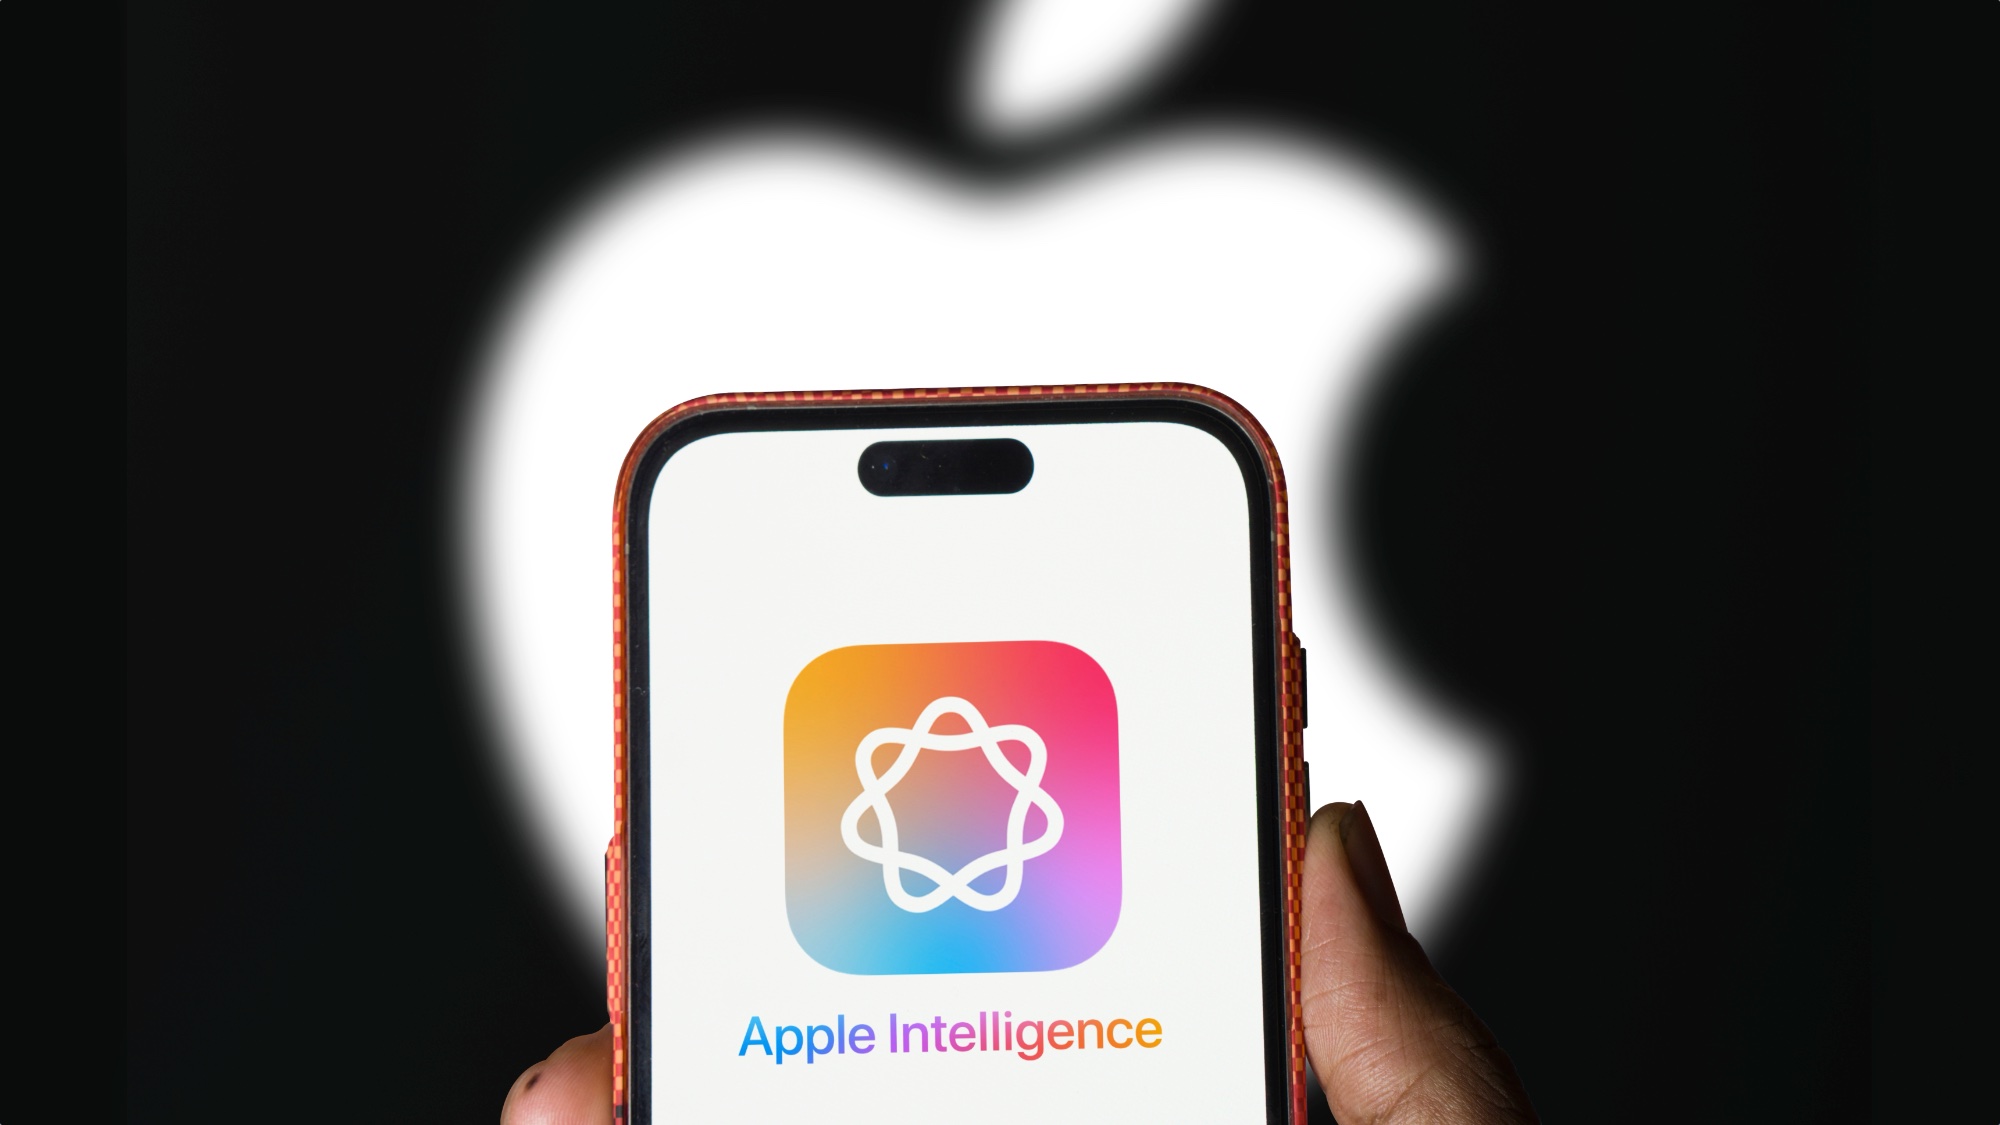 Arka planda Apple logosu bulunan iPhone'daki Apple Intelligence logosu